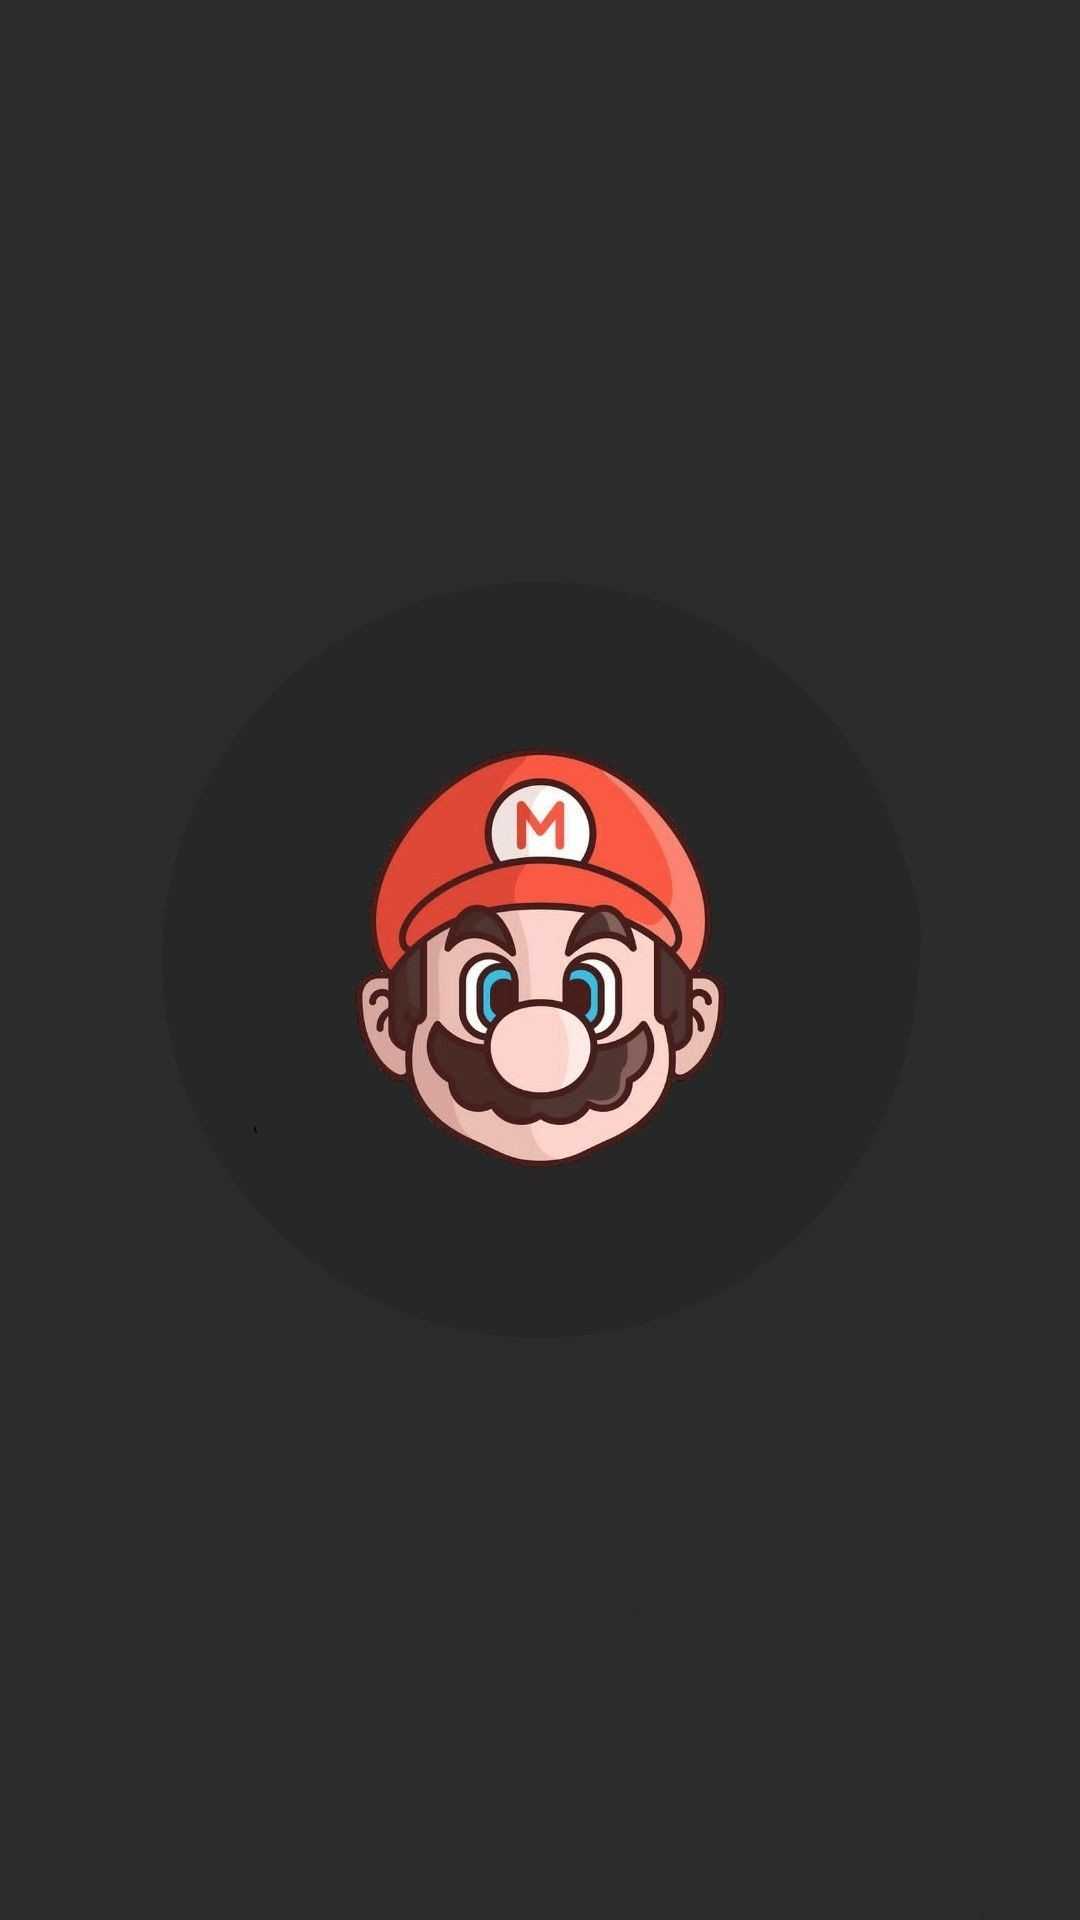 Mario Wallpaper - VoBss